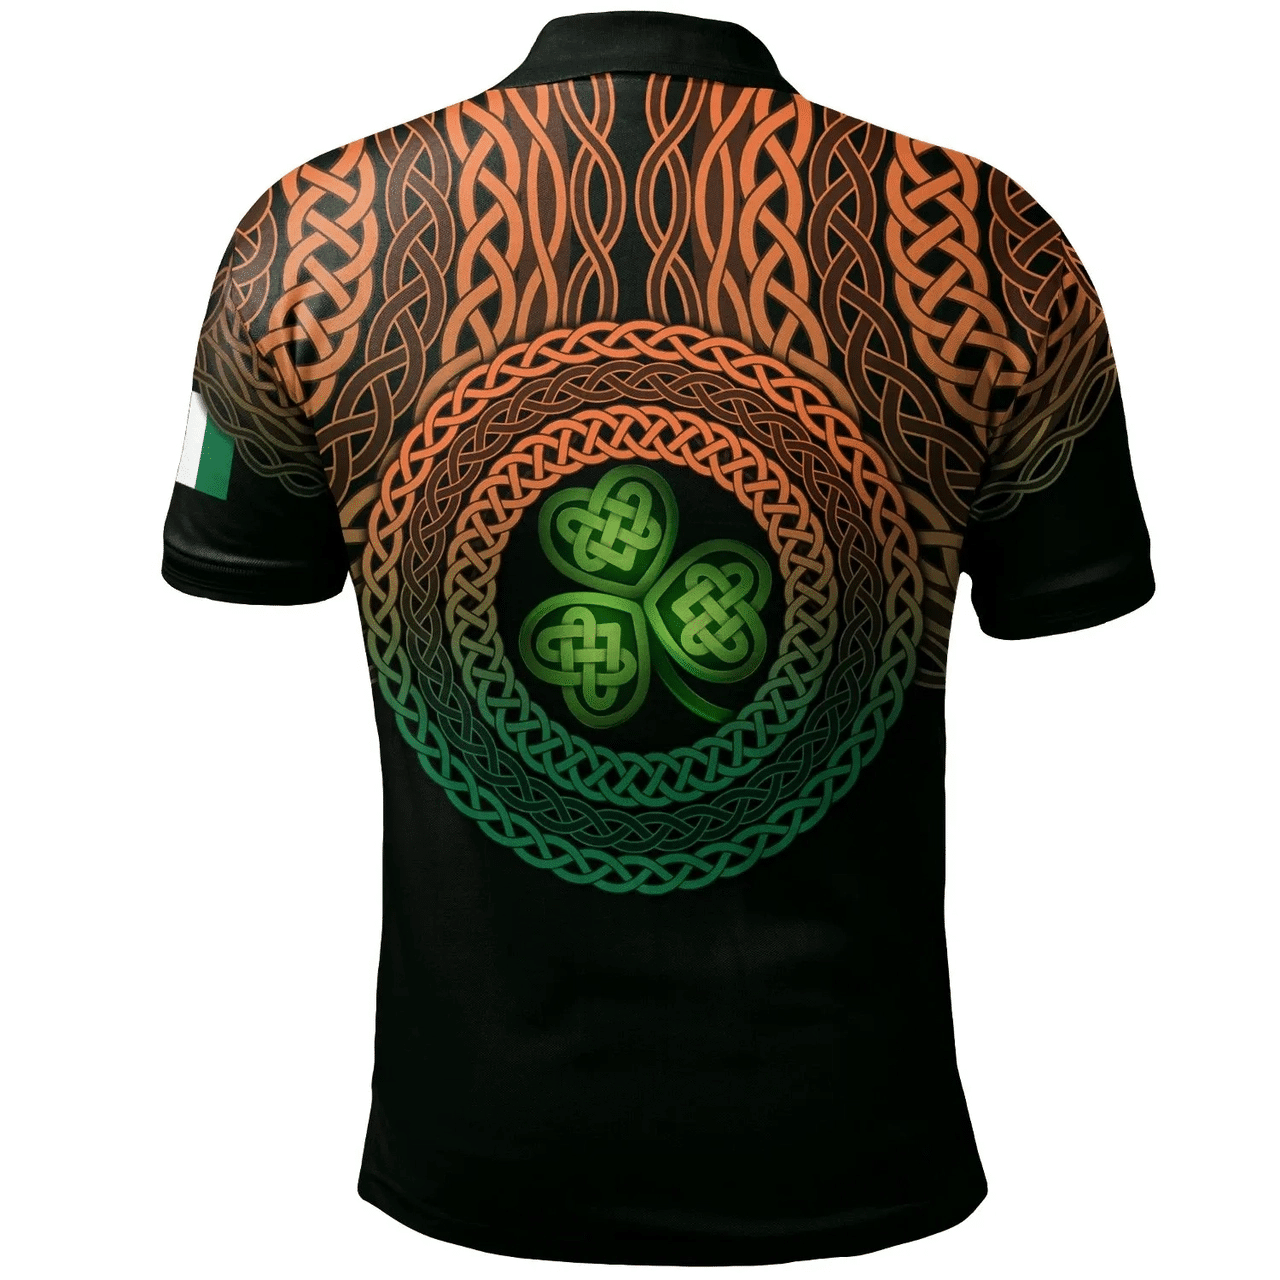 1stIreland Ireland Polo Shirt - West Irish Family Crest Polo Shirt - Celtic Pride A7 | 1stIreland.com